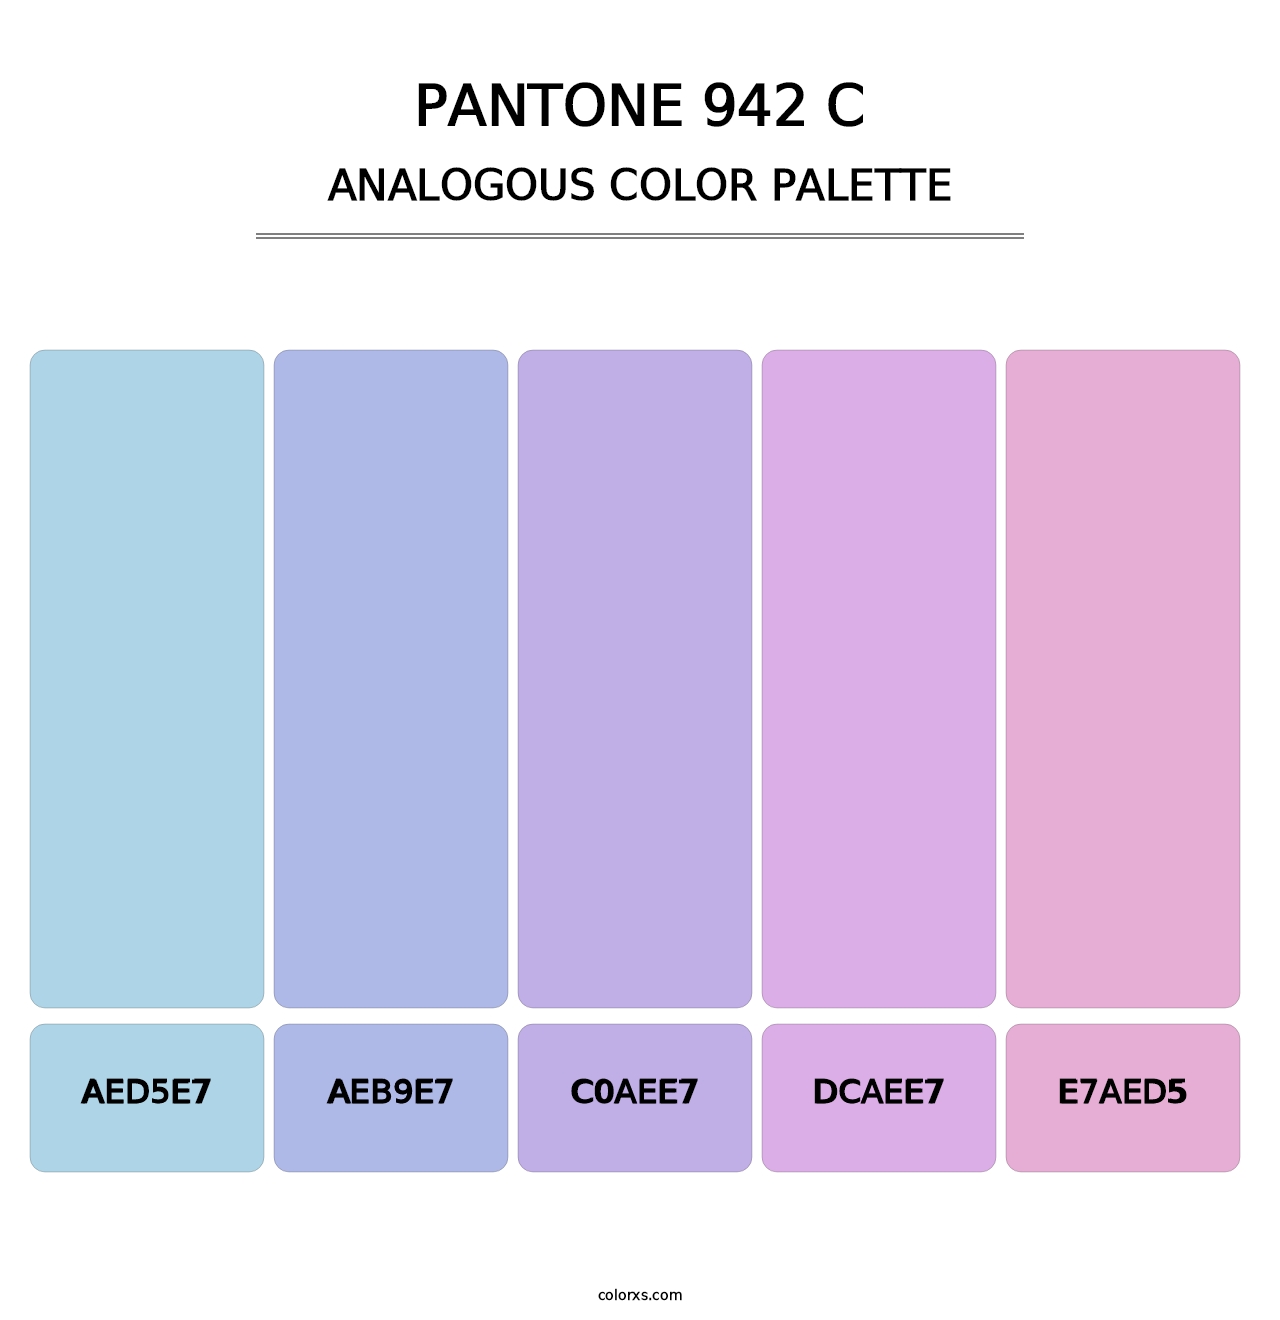 PANTONE 942 C - Analogous Color Palette